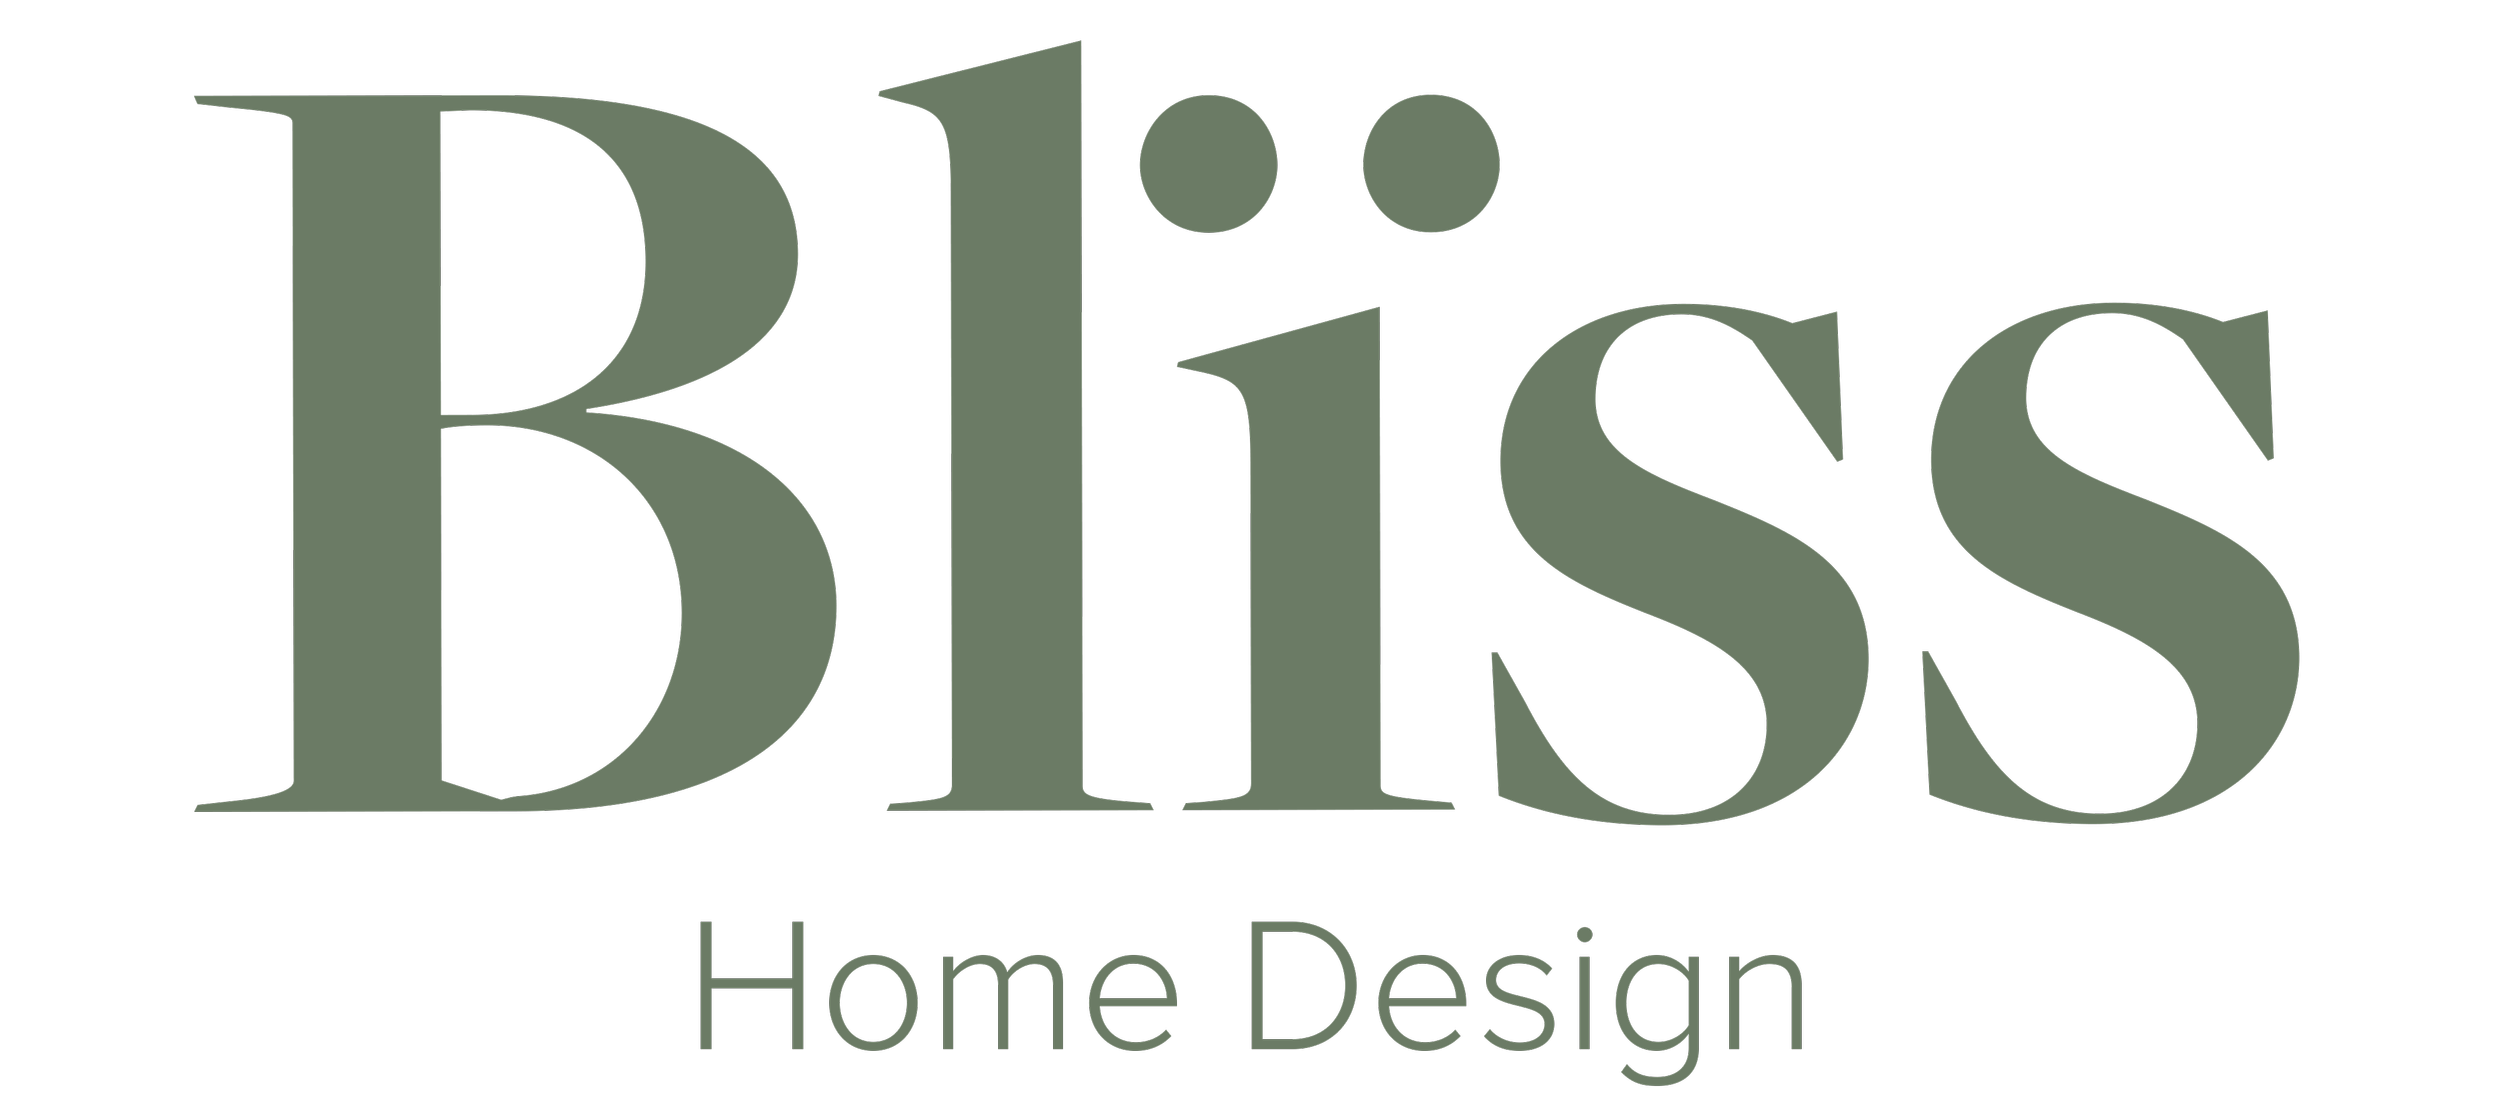 Bliss Home Design Mariana Jaramillo